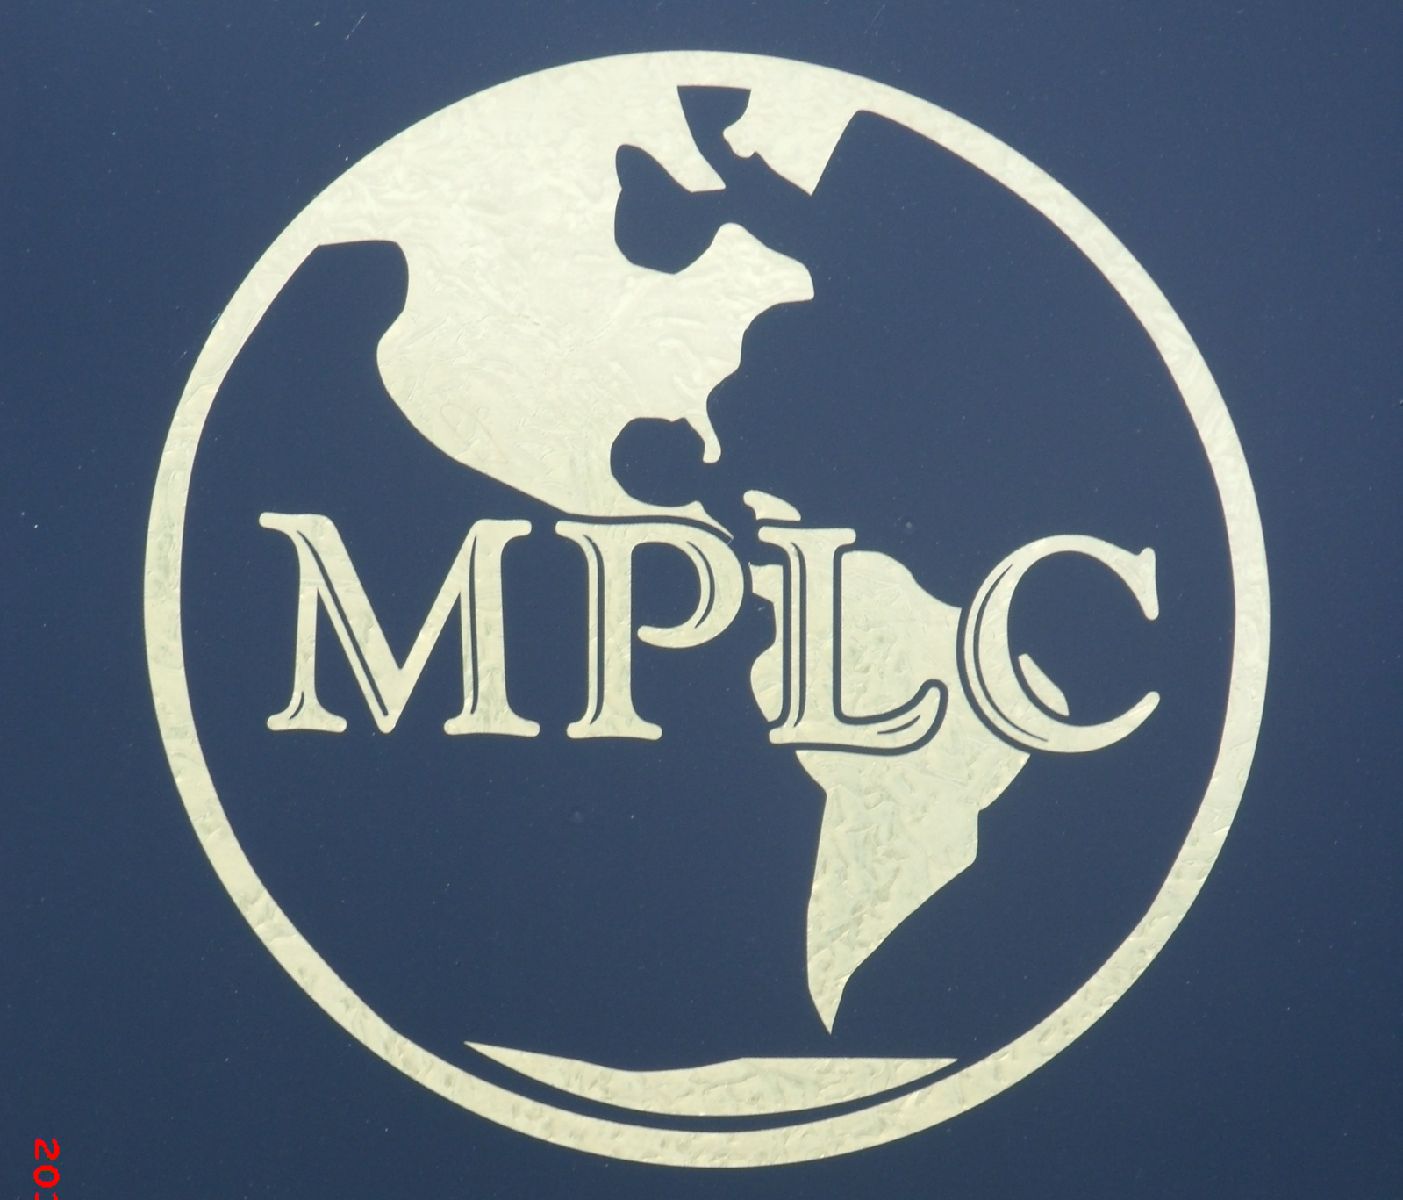 MPLC